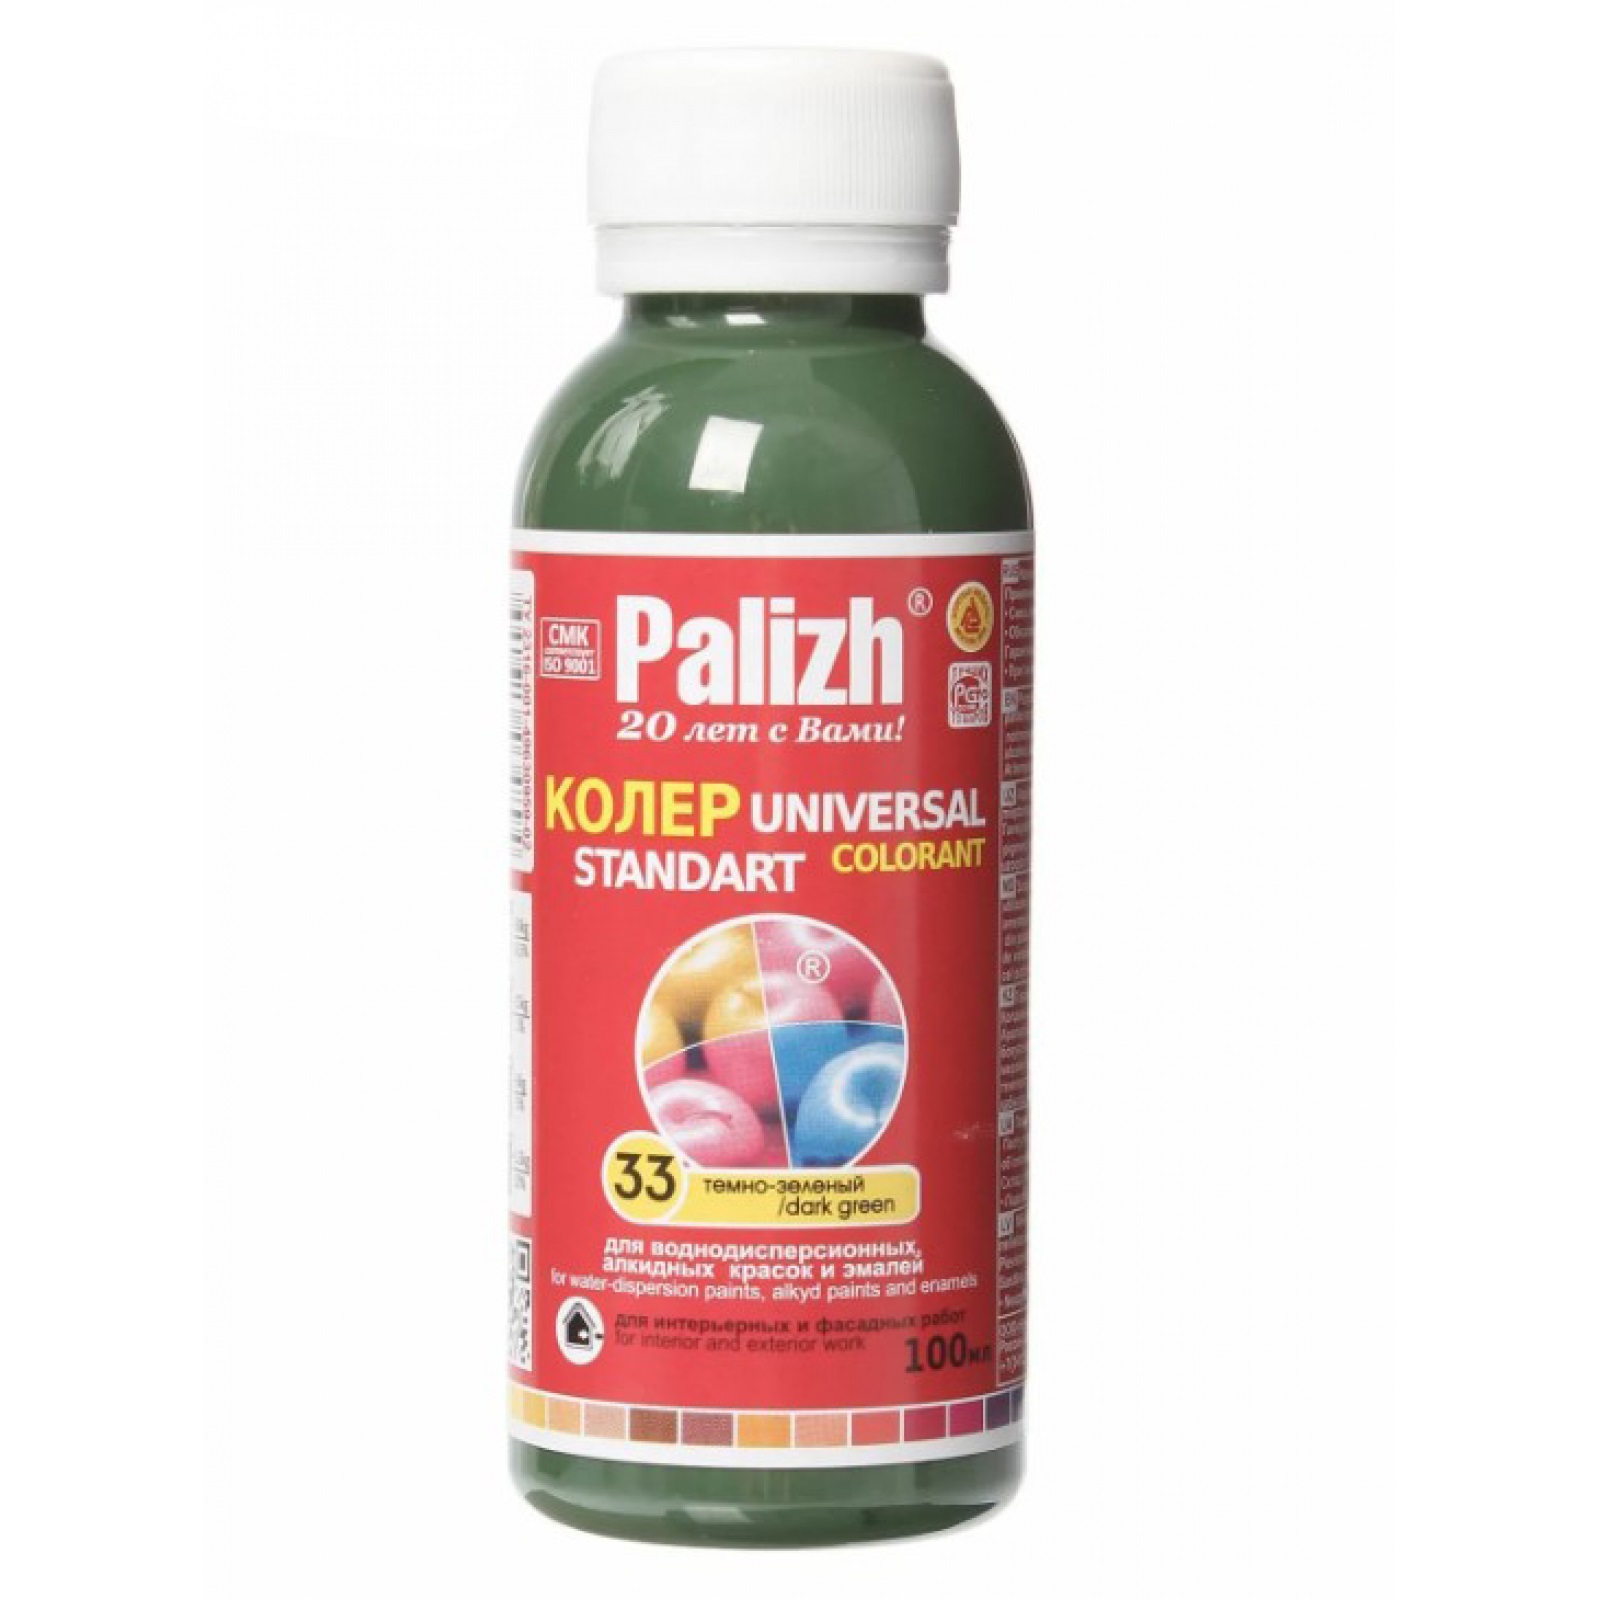 Паста универсальная колеровочная Palizh темно-зеленый - 100 мл паста универсальная колеровочная palizh темно зеленый 100 мл